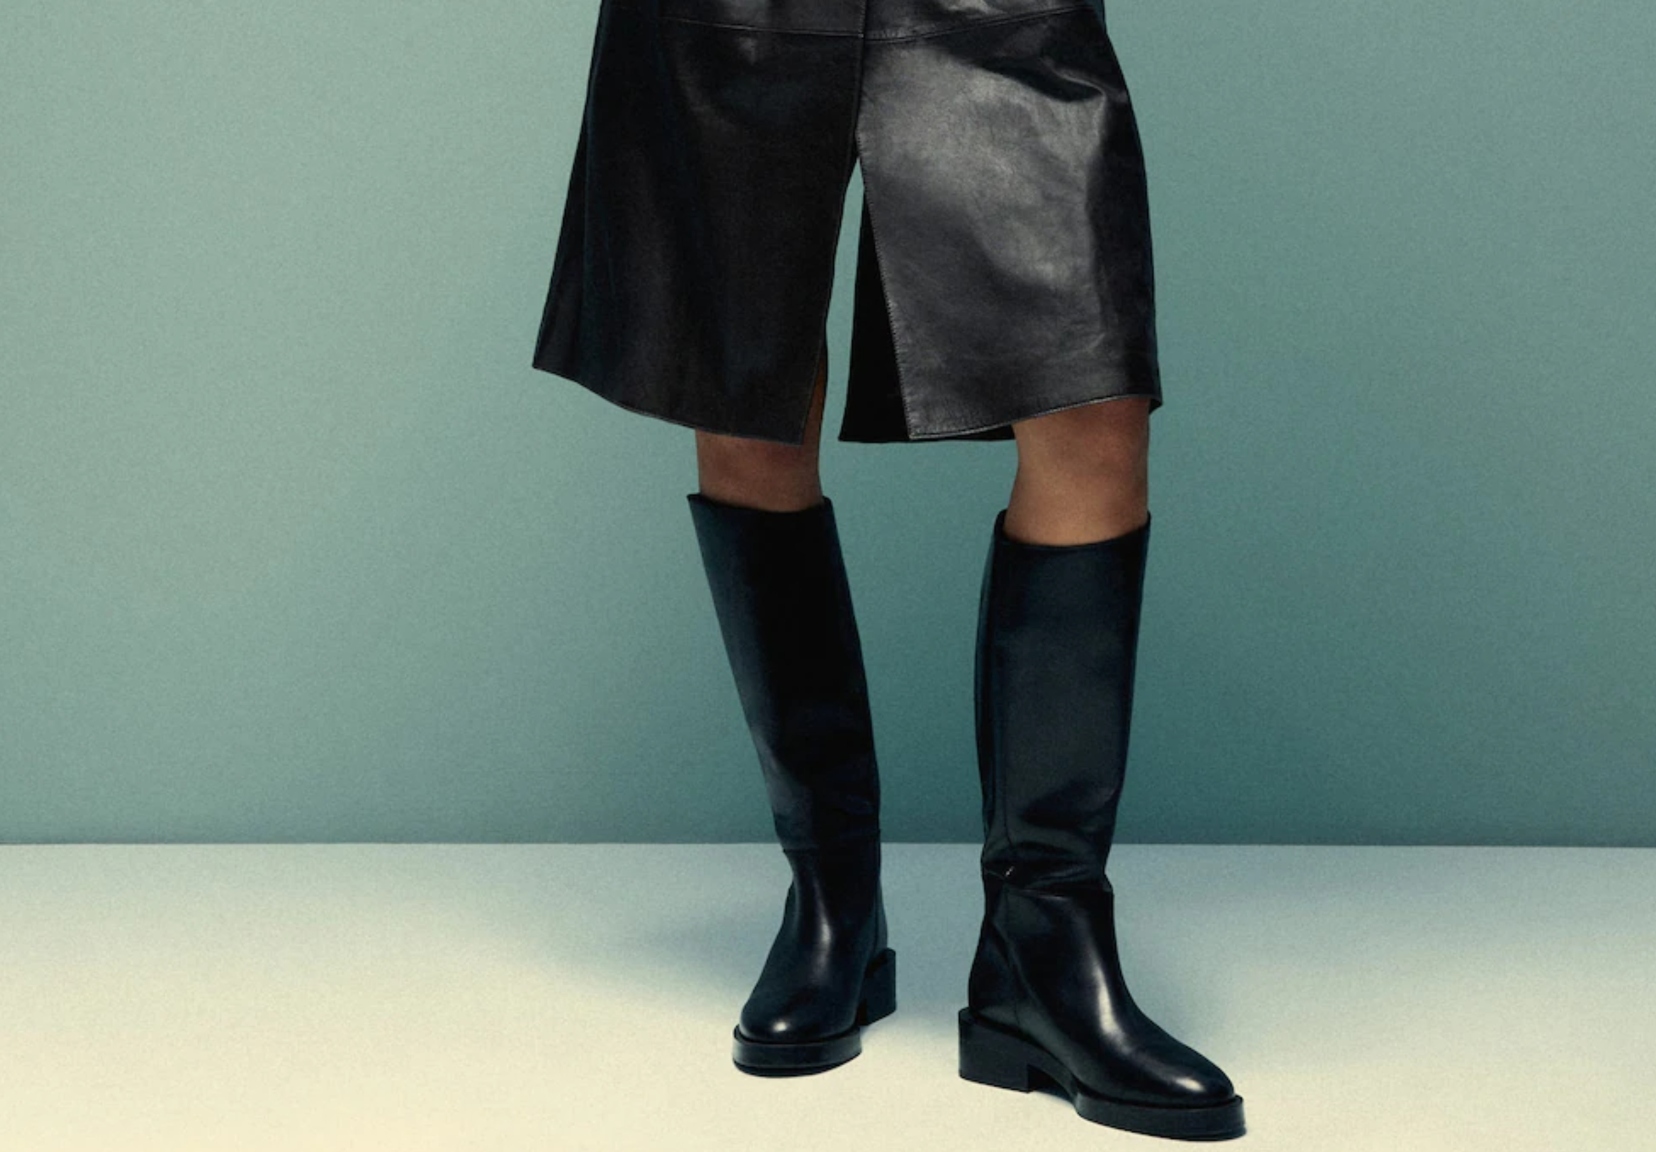 Las 10 botas altas que puedes combinar con toda tu ropa, de Zara a H&M | Moda